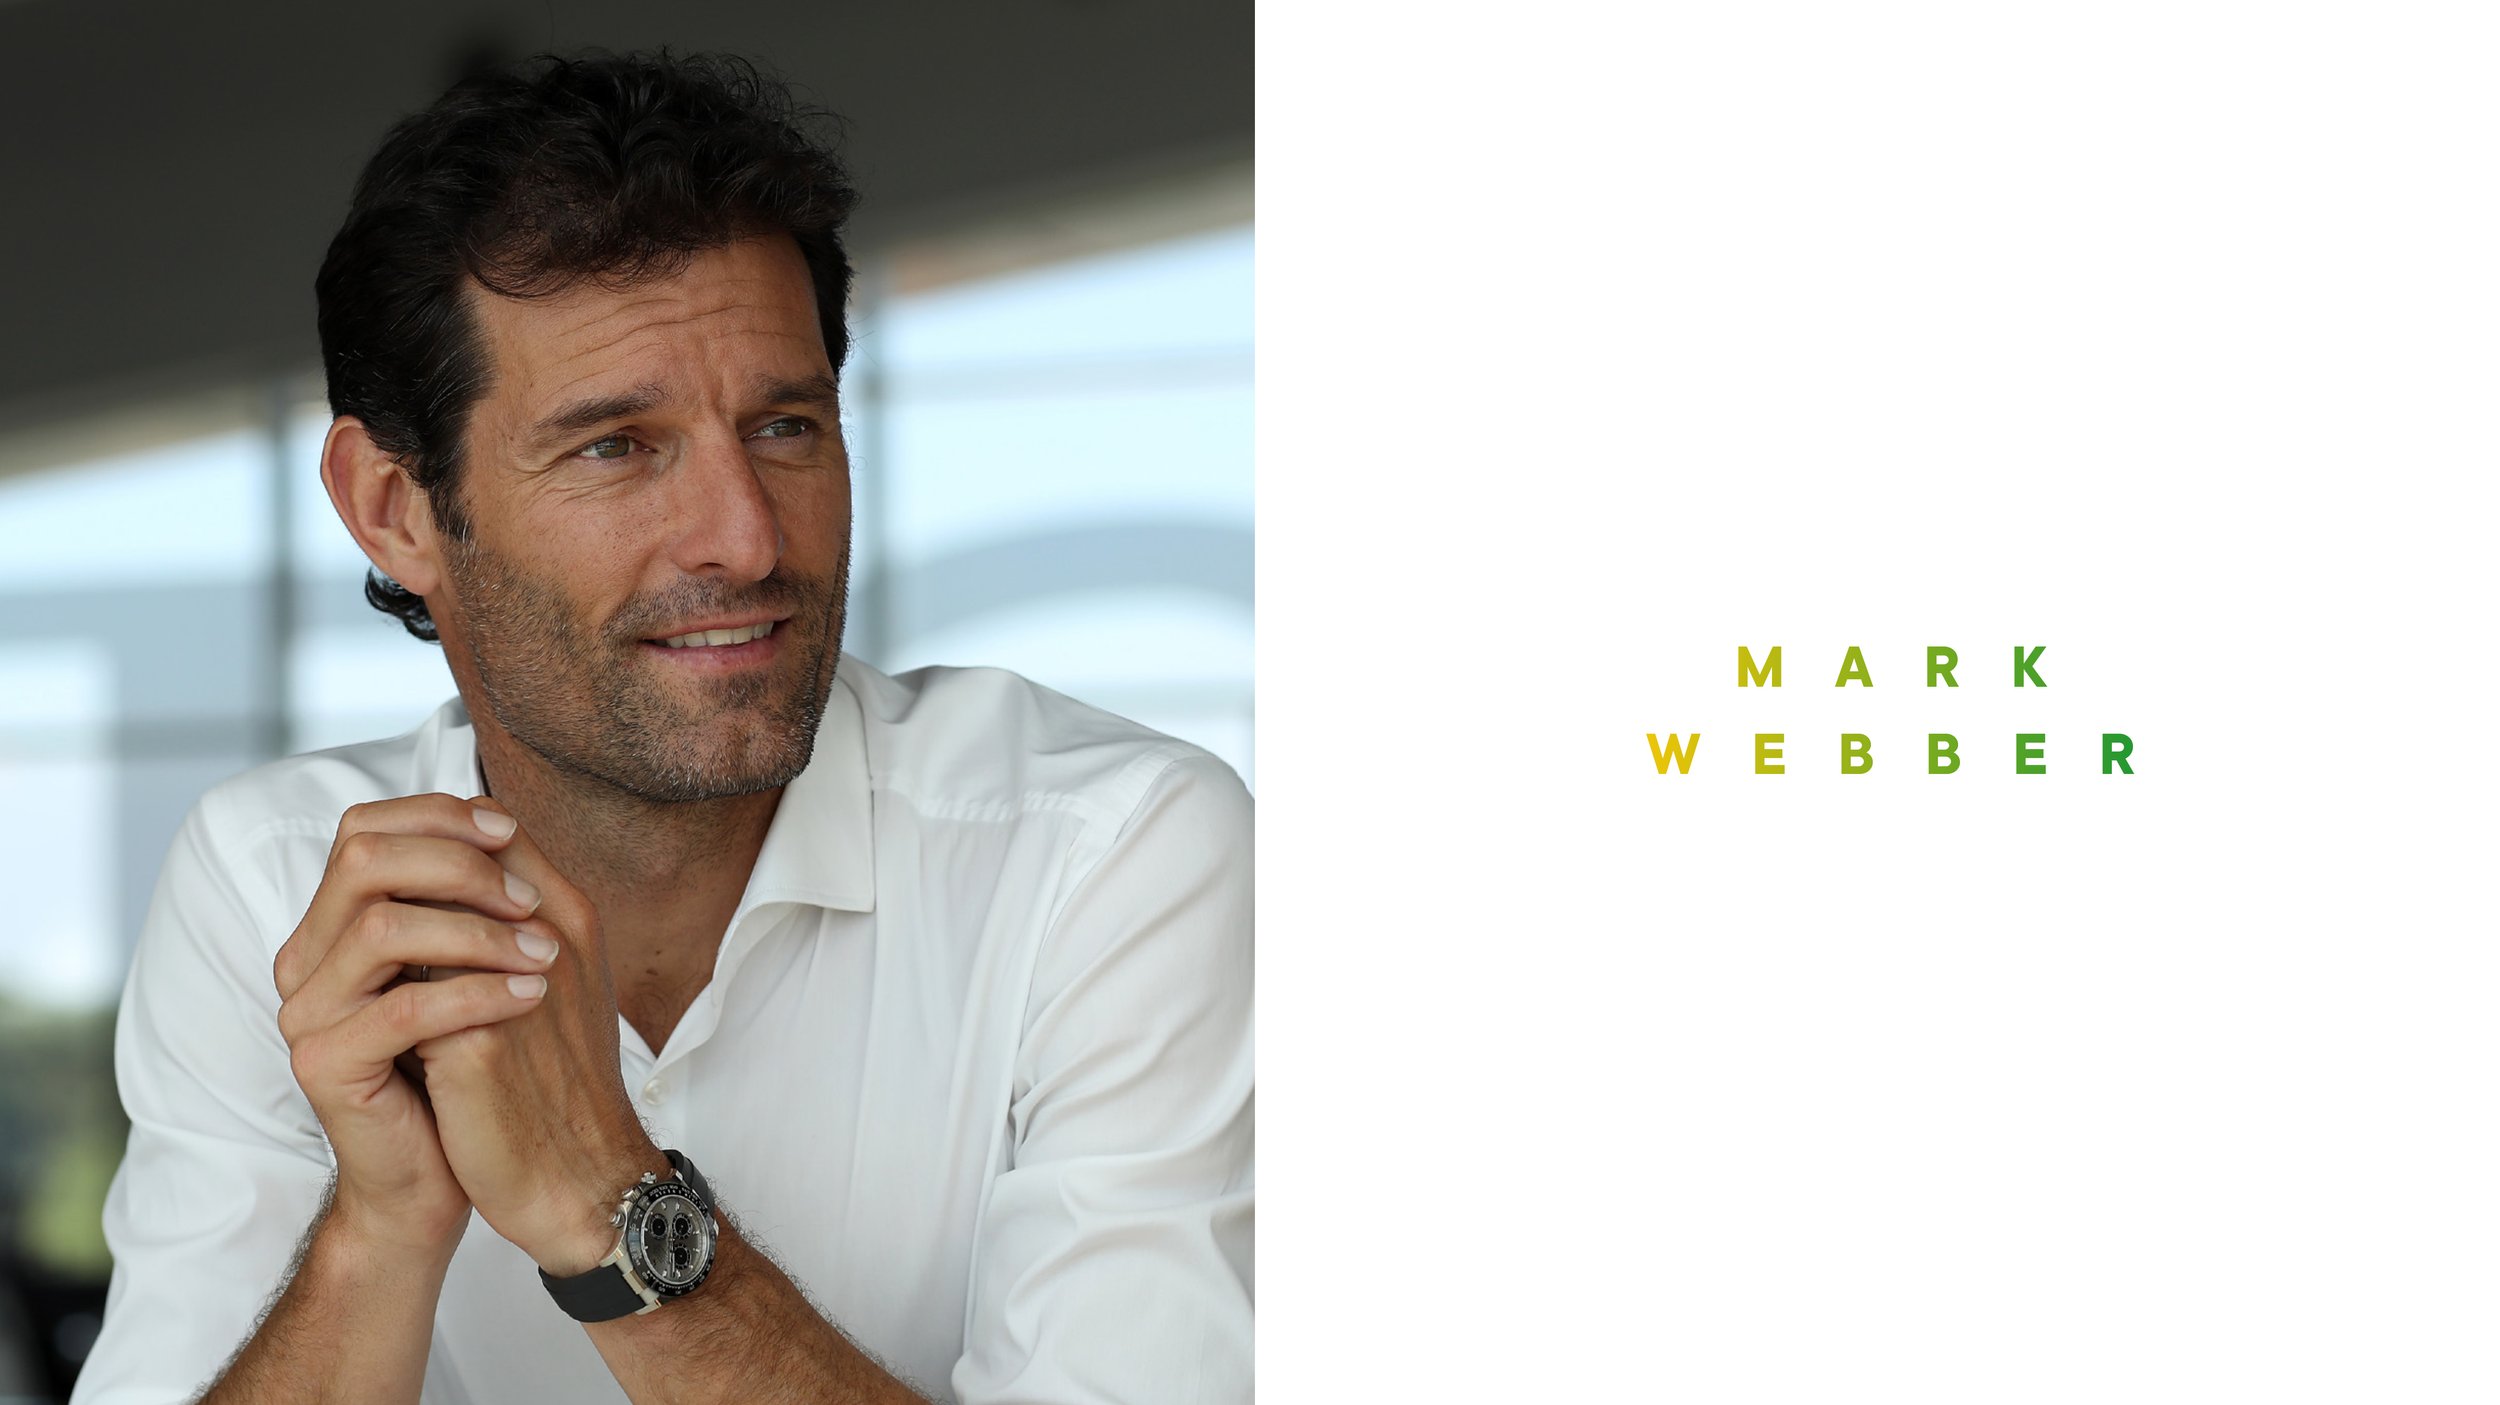 Mark Webber media pack